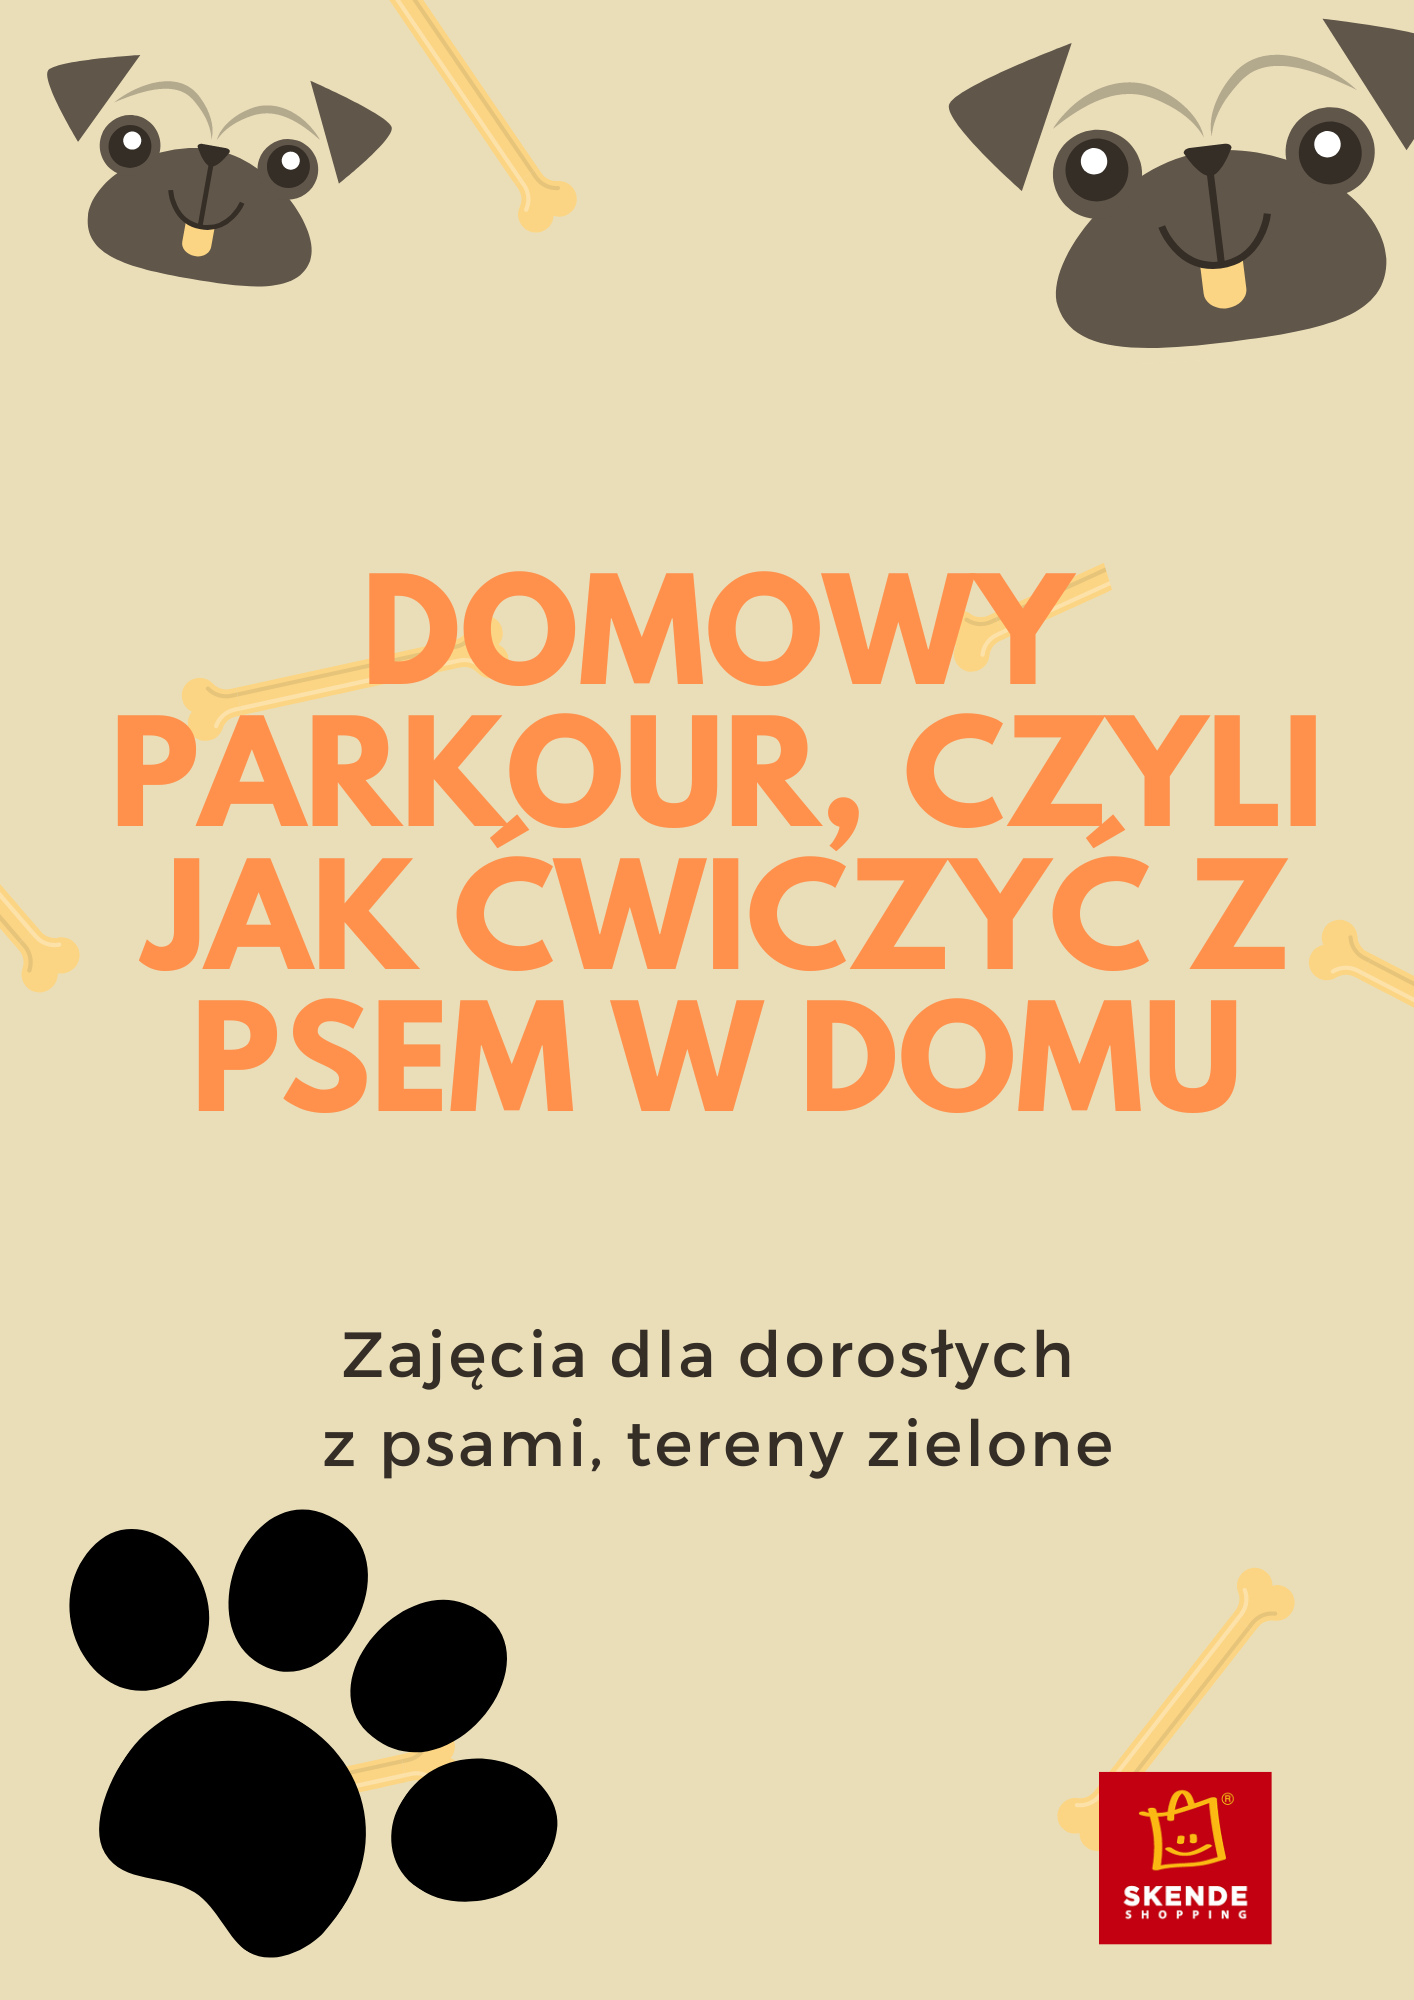 Plakat Domowy parkour, czyli jak ćwiczyć z psem w domu 88727